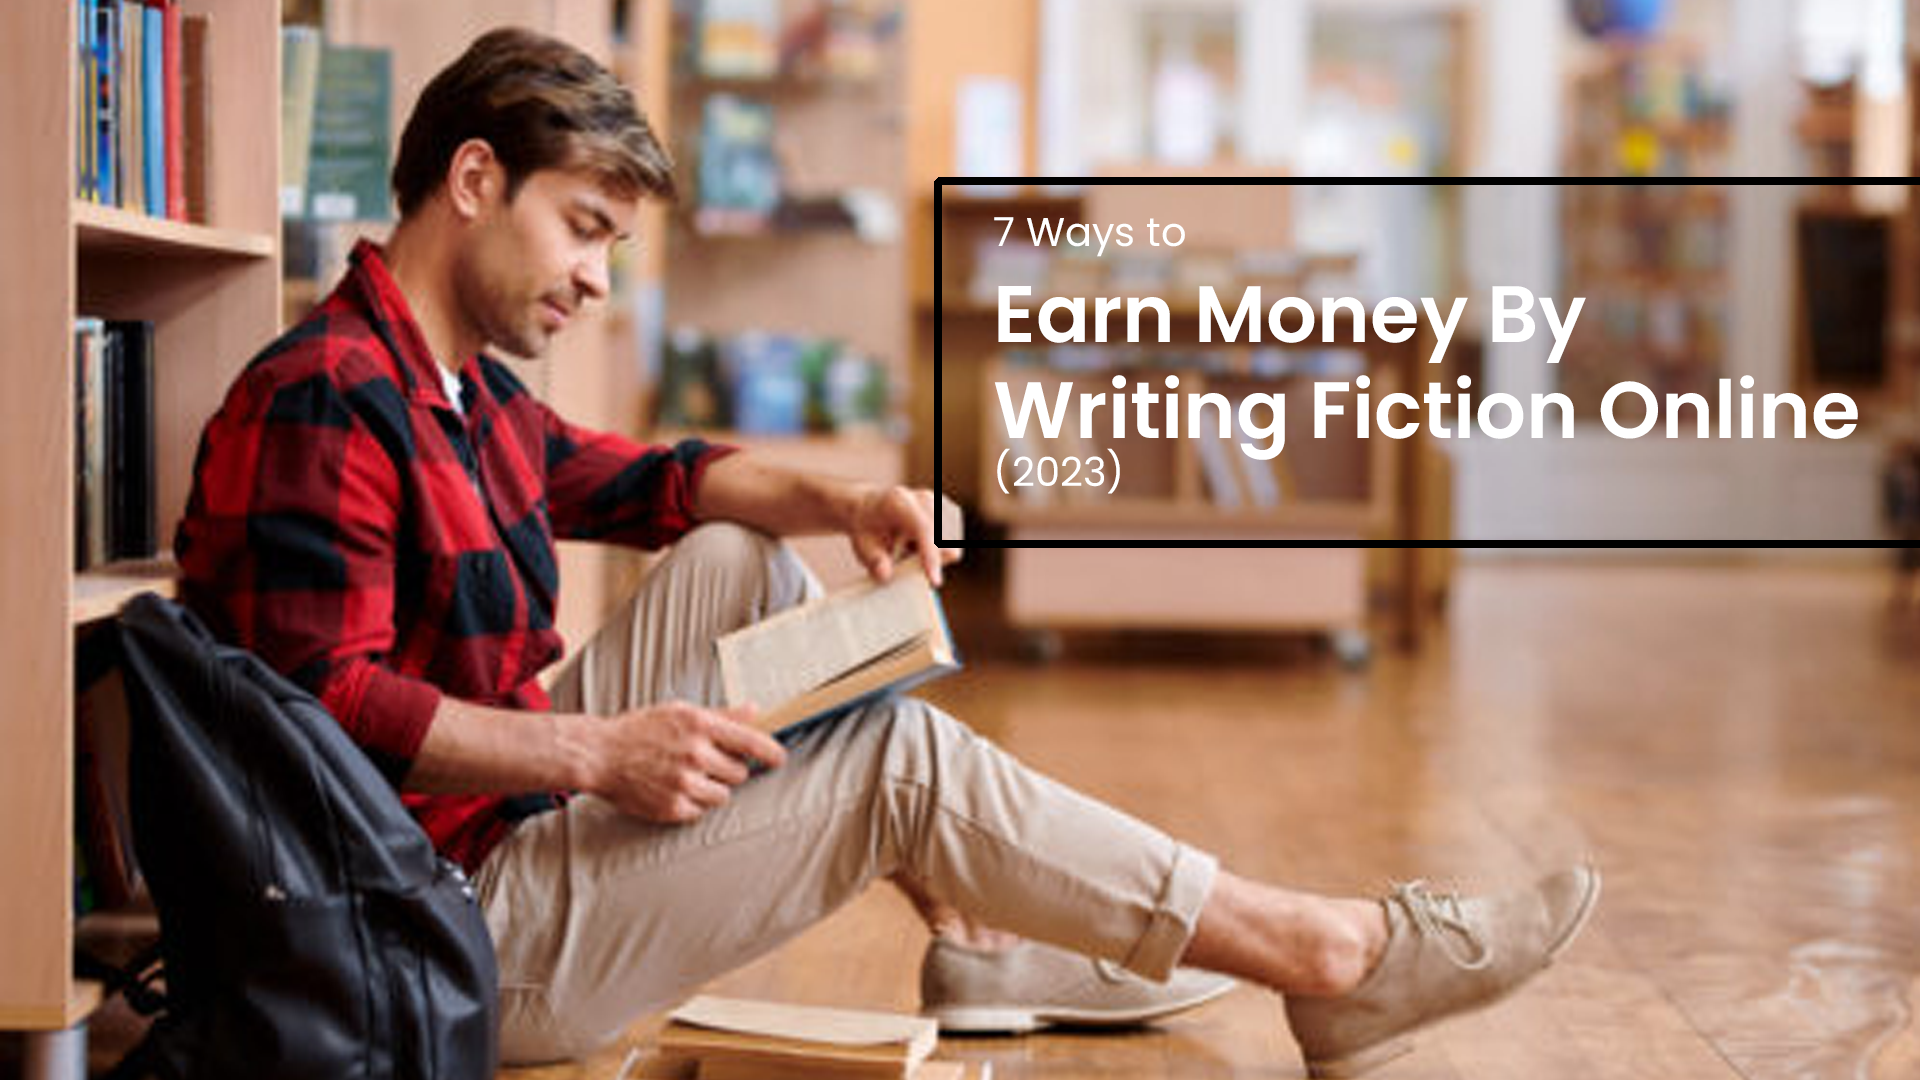 earn money writing fiction online in nigeria